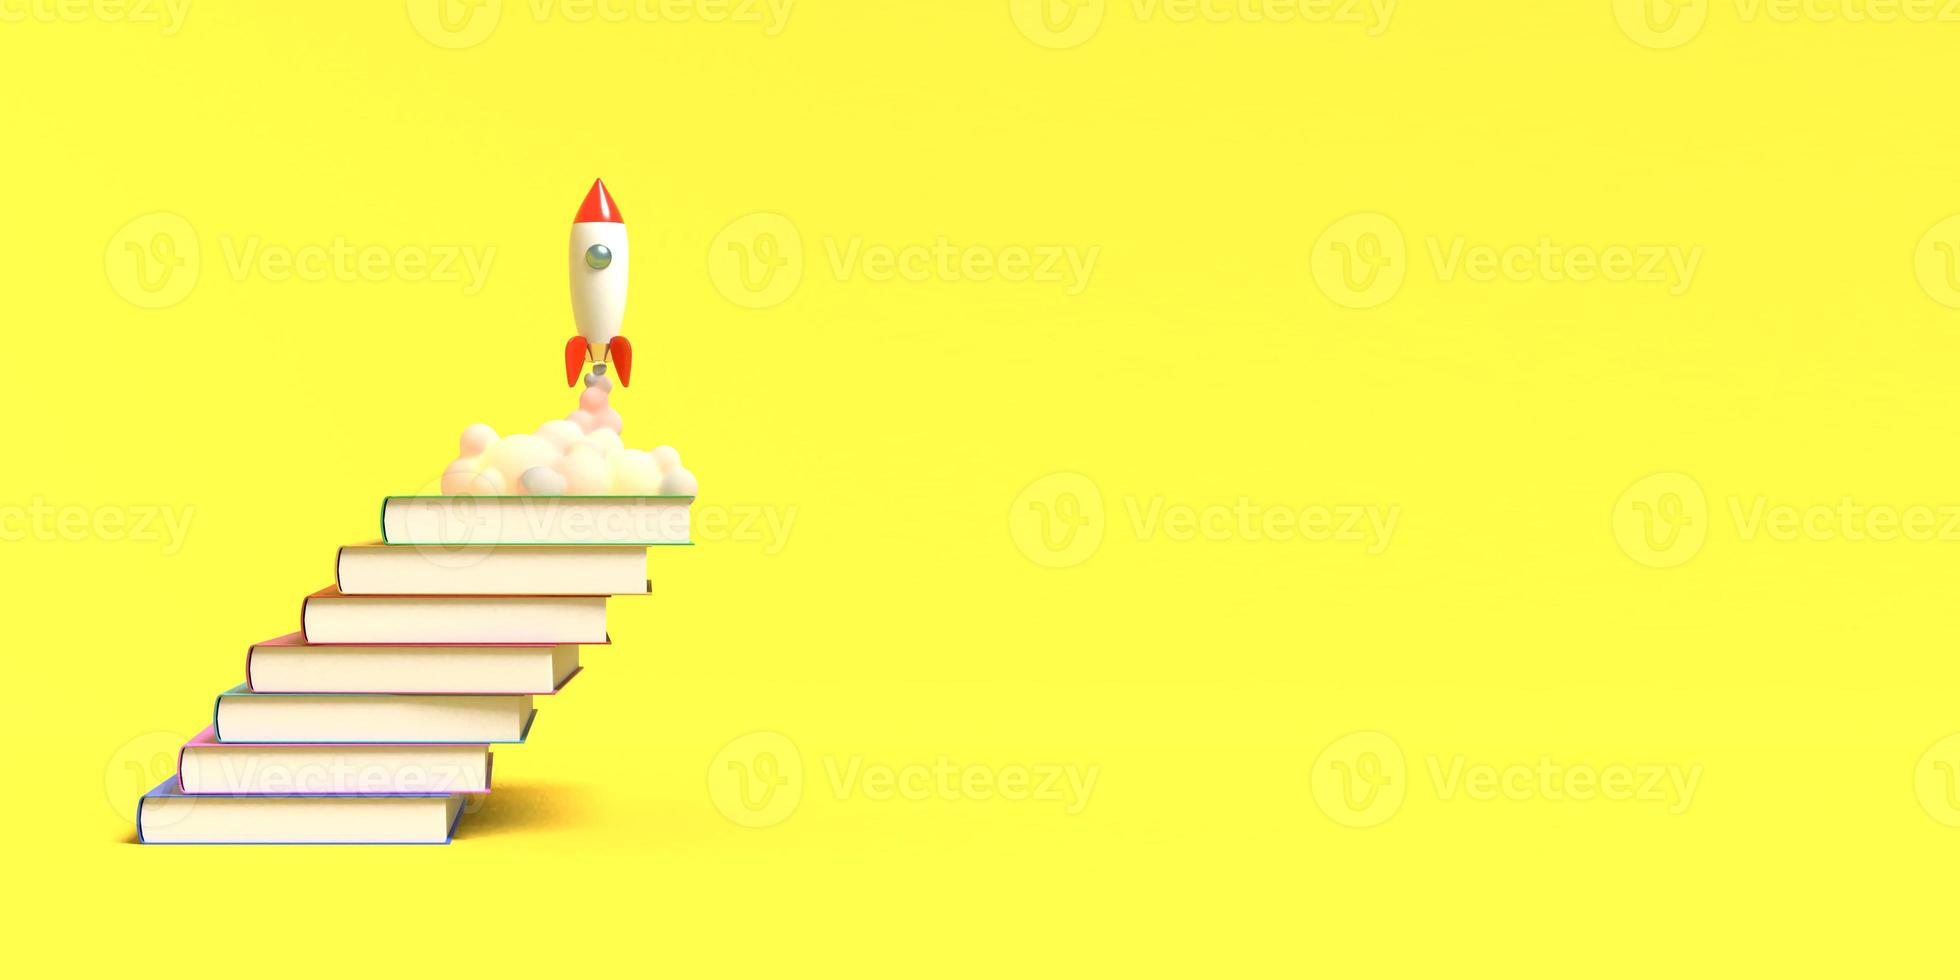 leksaksraket lyfter från böckerna som spyr rök på en vit bakgrund. symbol för önskan om utbildning och kunskap. skolan illustration. 3d-rendering. foto